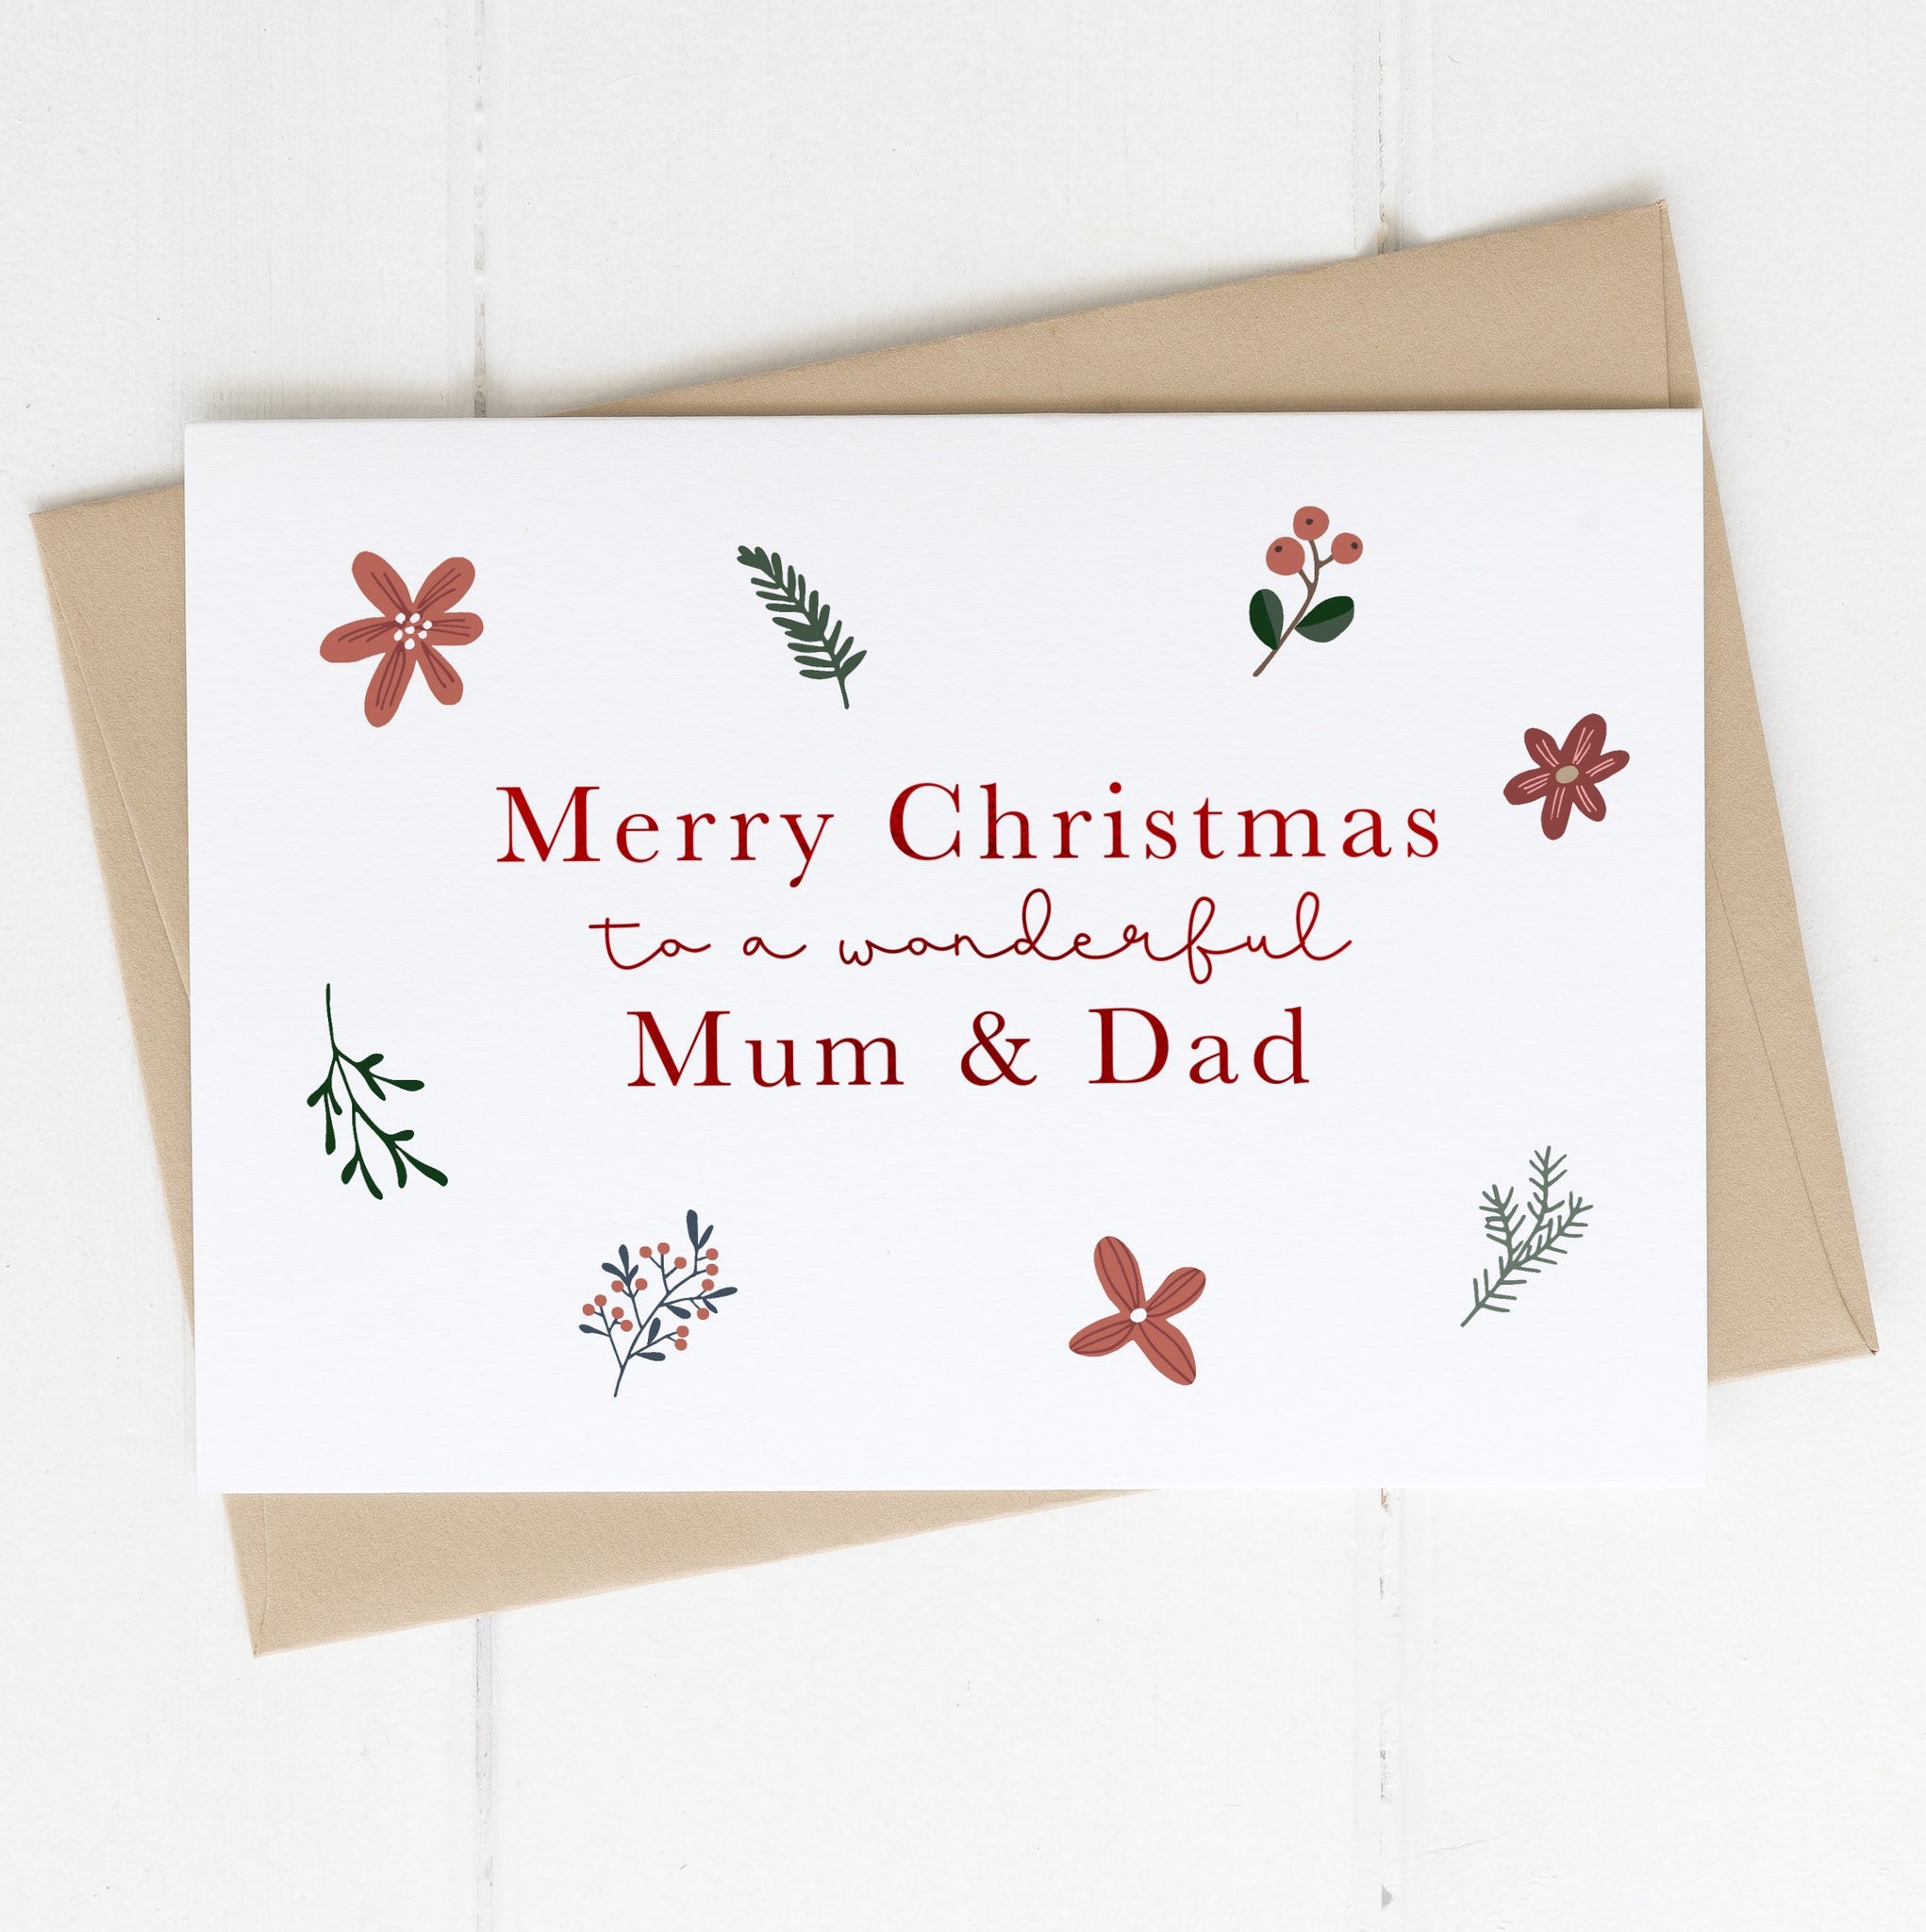 Mum & Dad Christmas card - Berries & flowers